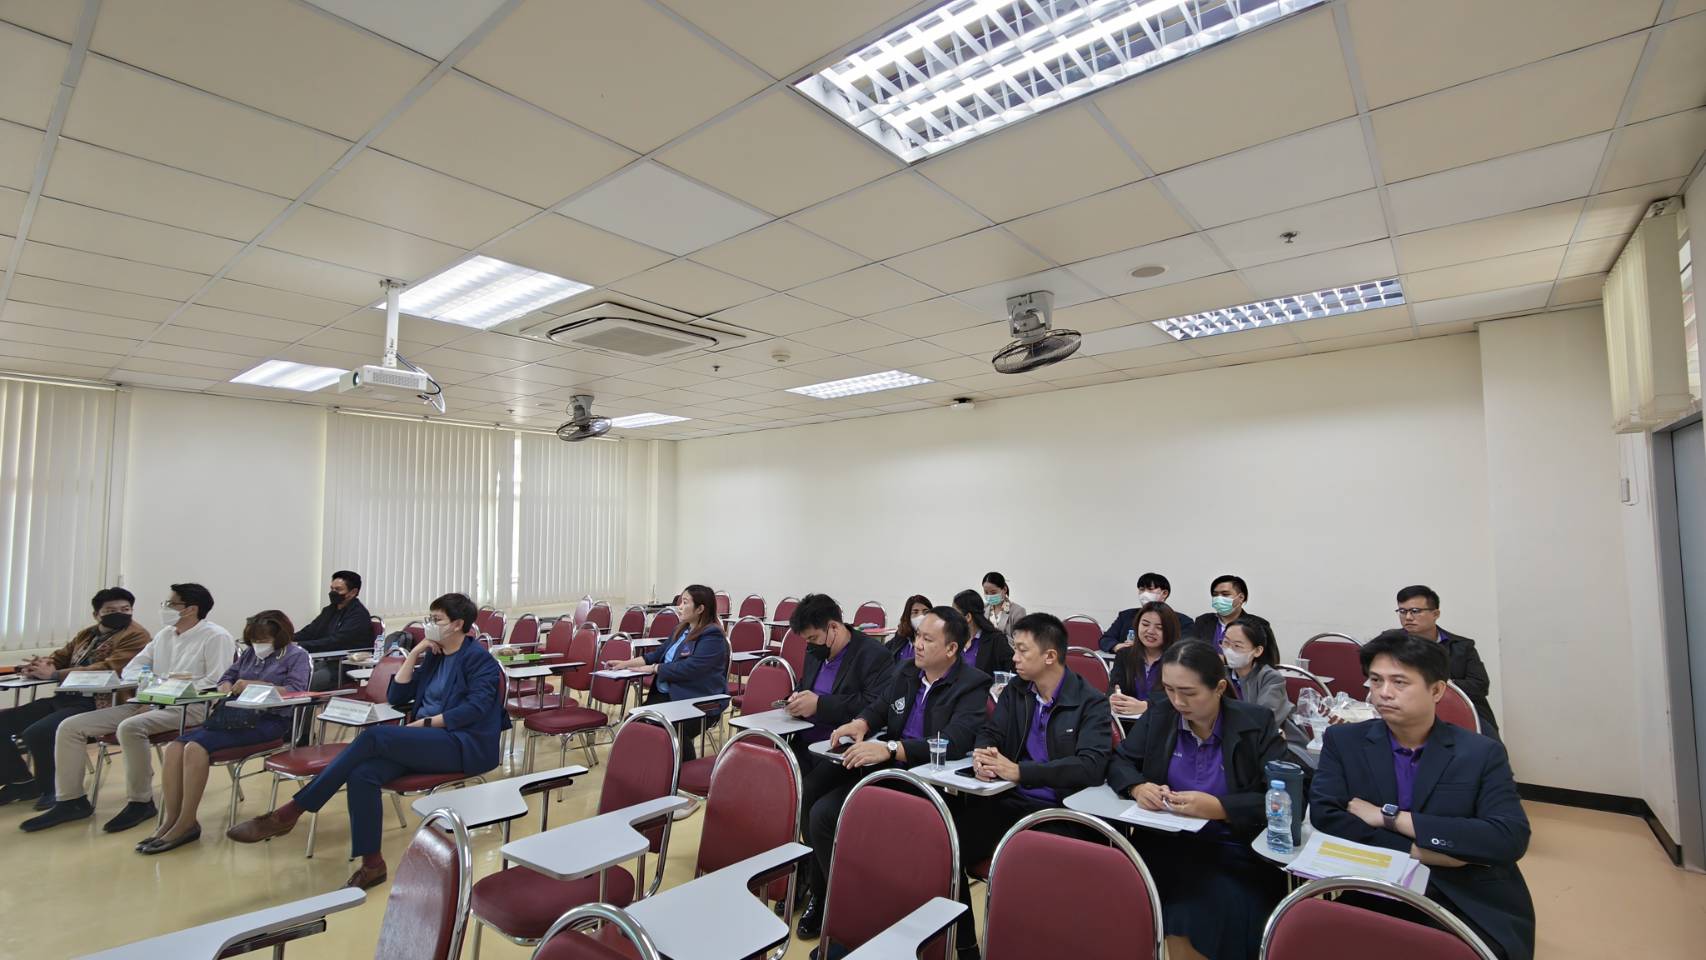 คณะรัฐศาสตร์และสังคมศาสตร์จัดโครงการประชุมวิชาการบัณฑิตศึกษา ครั้งที่ 9